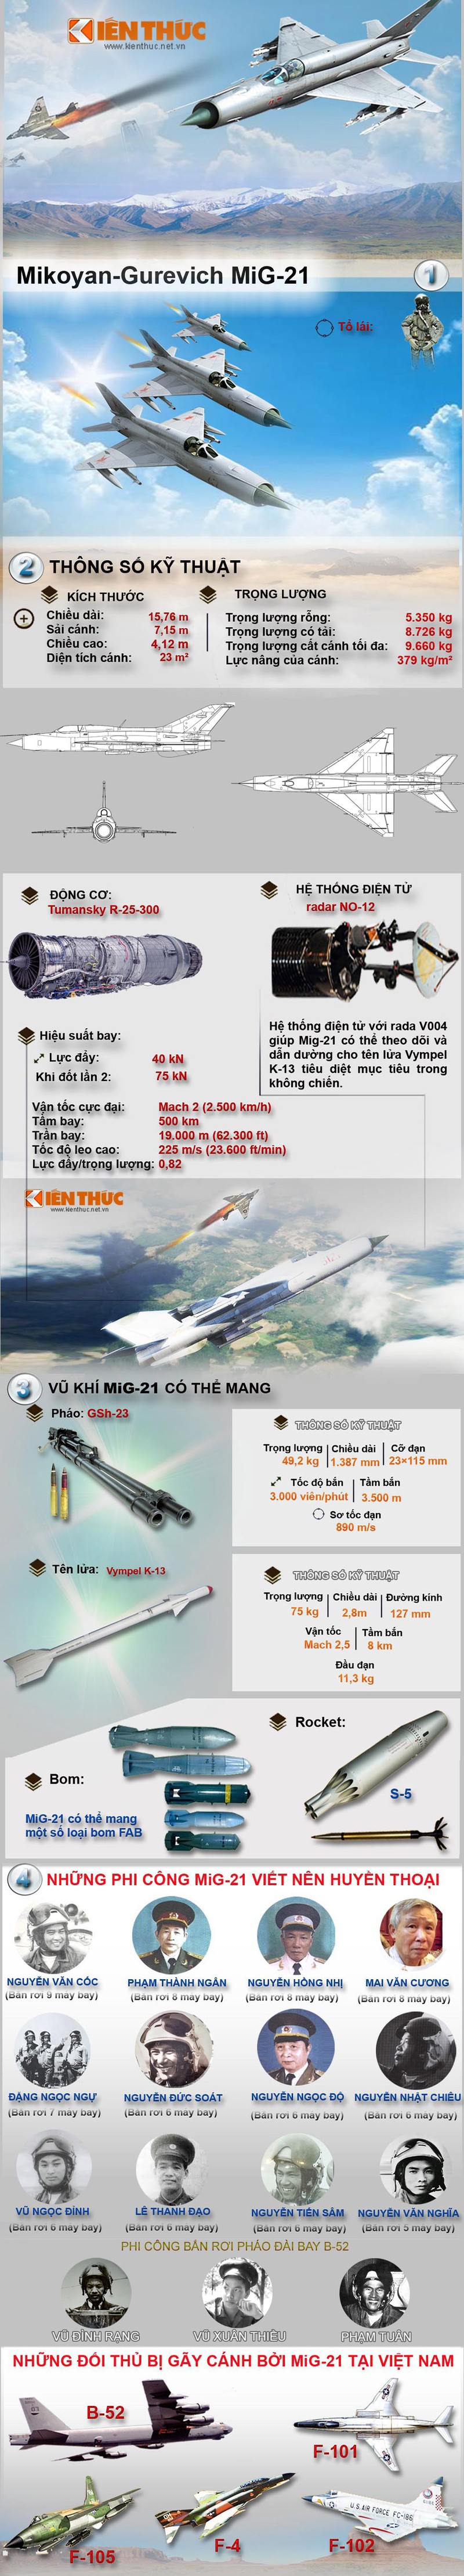 Infographic: Tiem kich MiG-21 va phi cong KQND Viet Nam